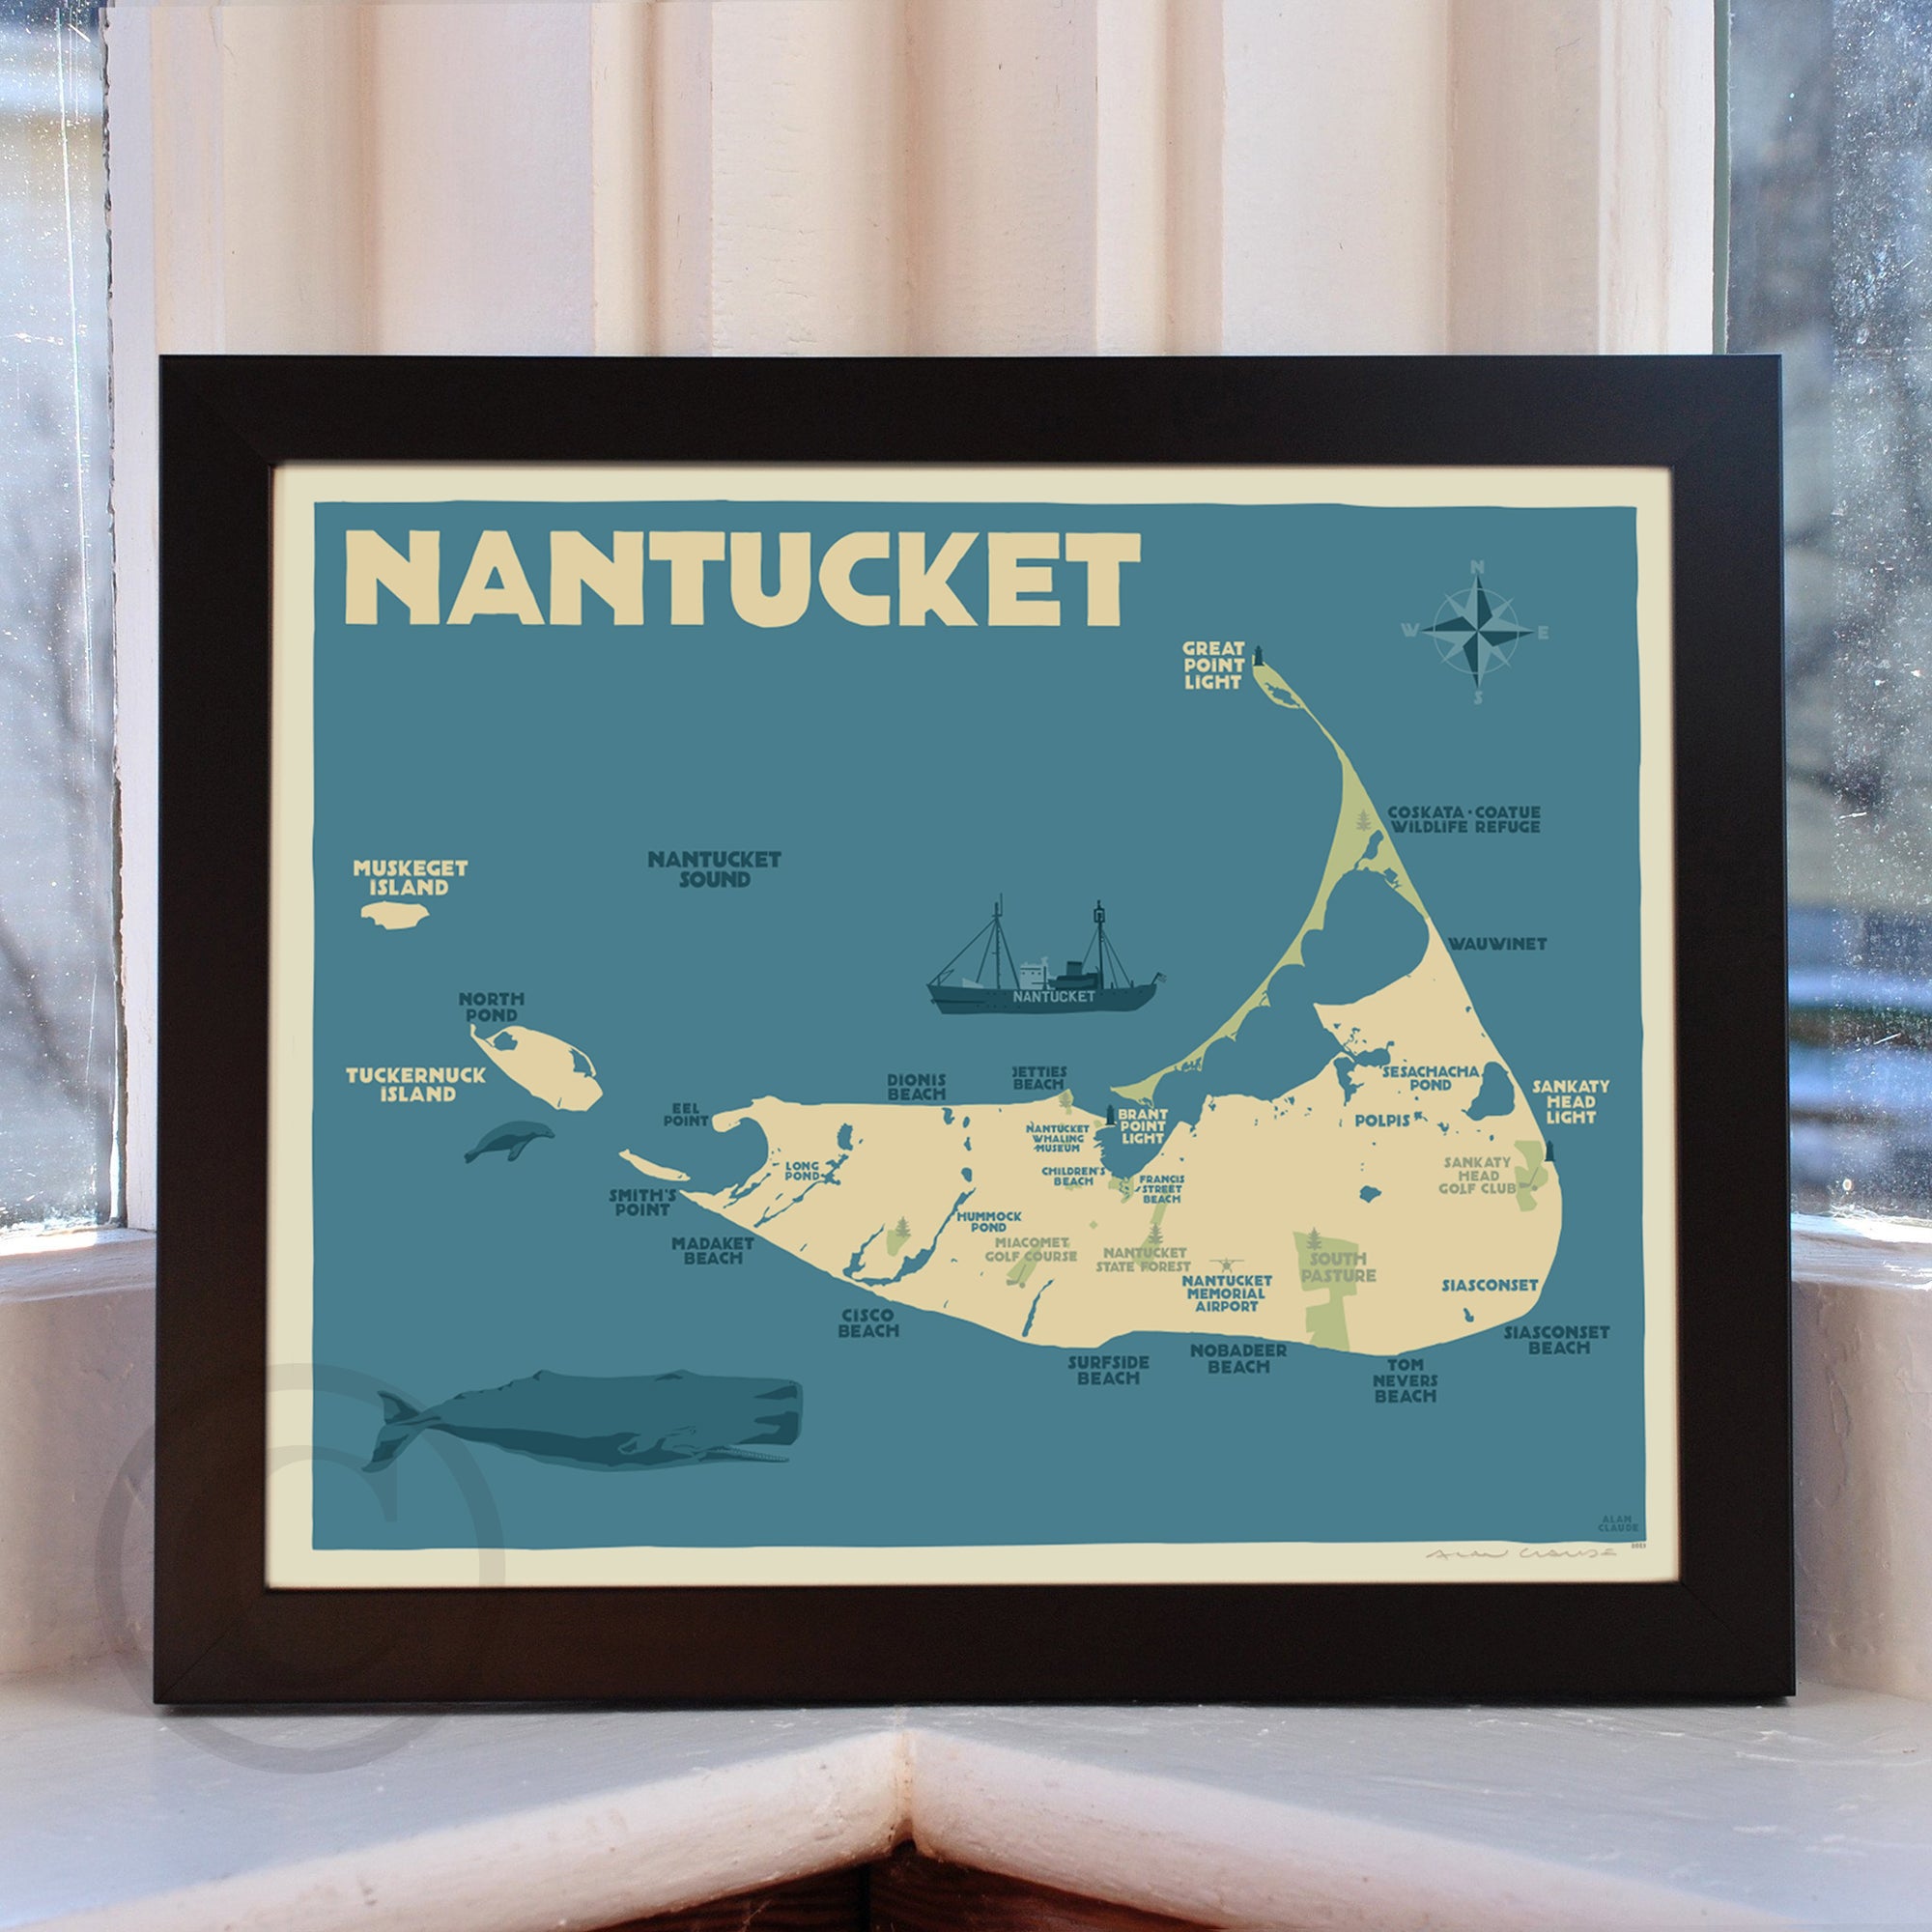 Nantucket Map Art Print 8" x 10" Horizontal Framed Travel Poster By Alan Claude - Massachusetts